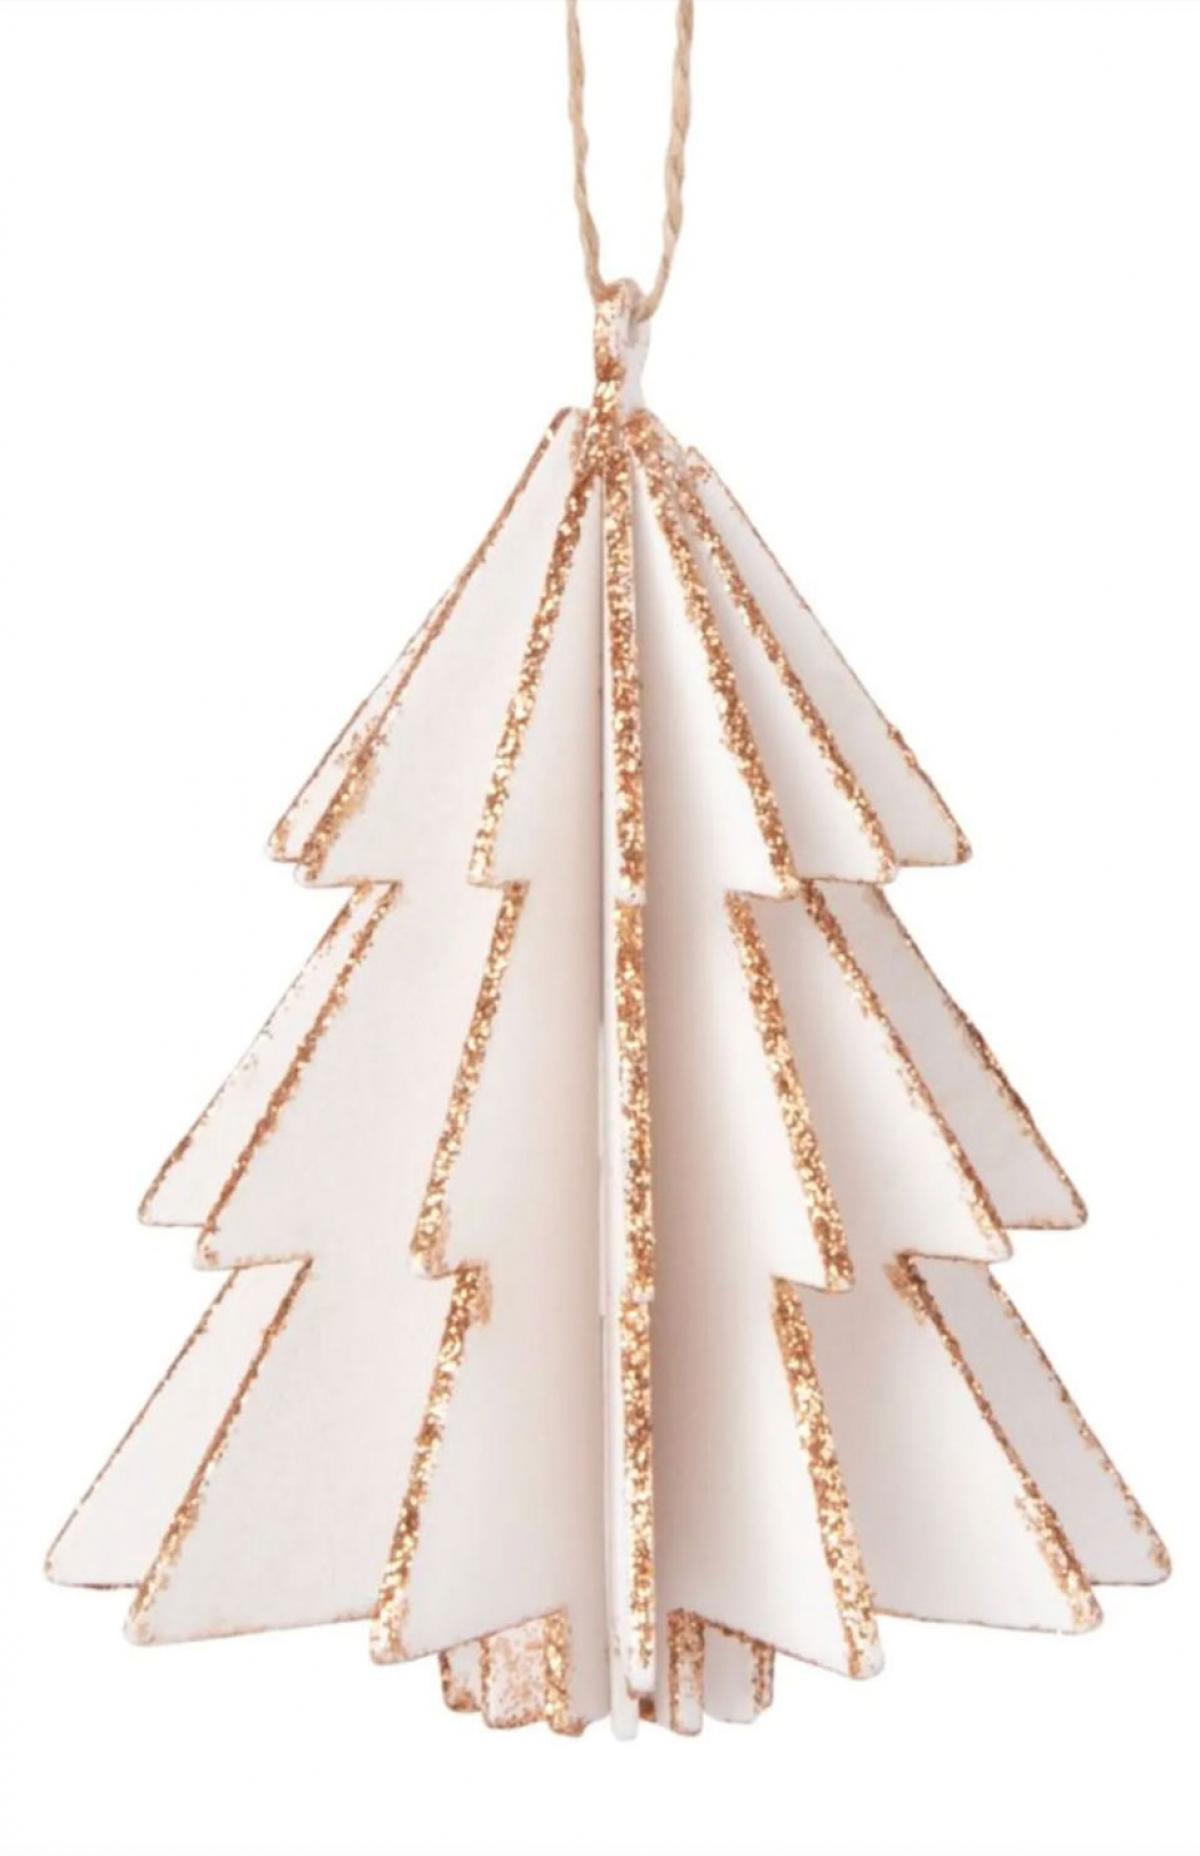 Kersthanger met dennenboom uit karton (set van 6)